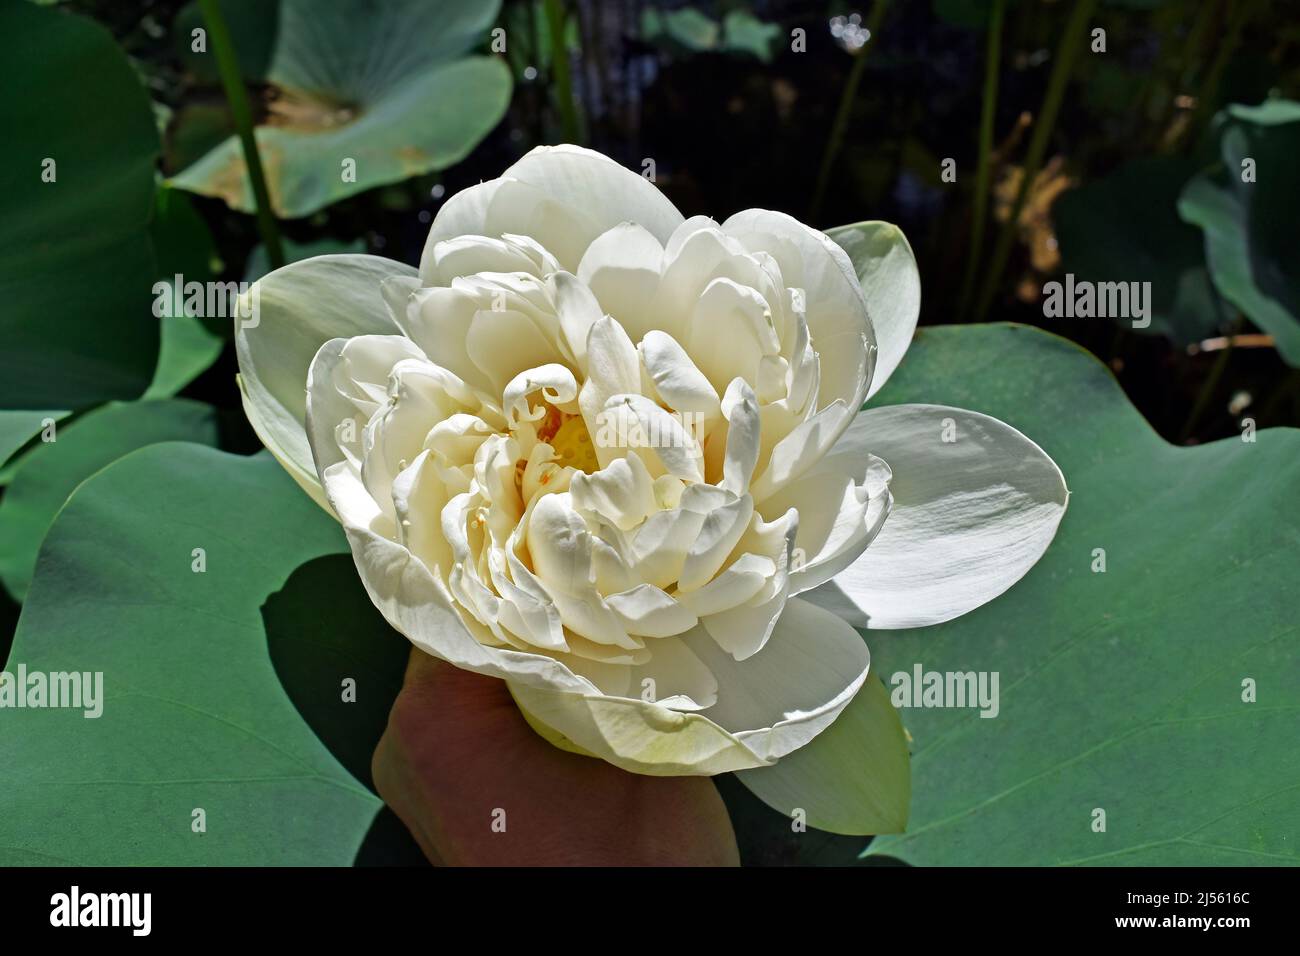 White lotus flower (Nelumbo nucifera) on hand Stock Photo